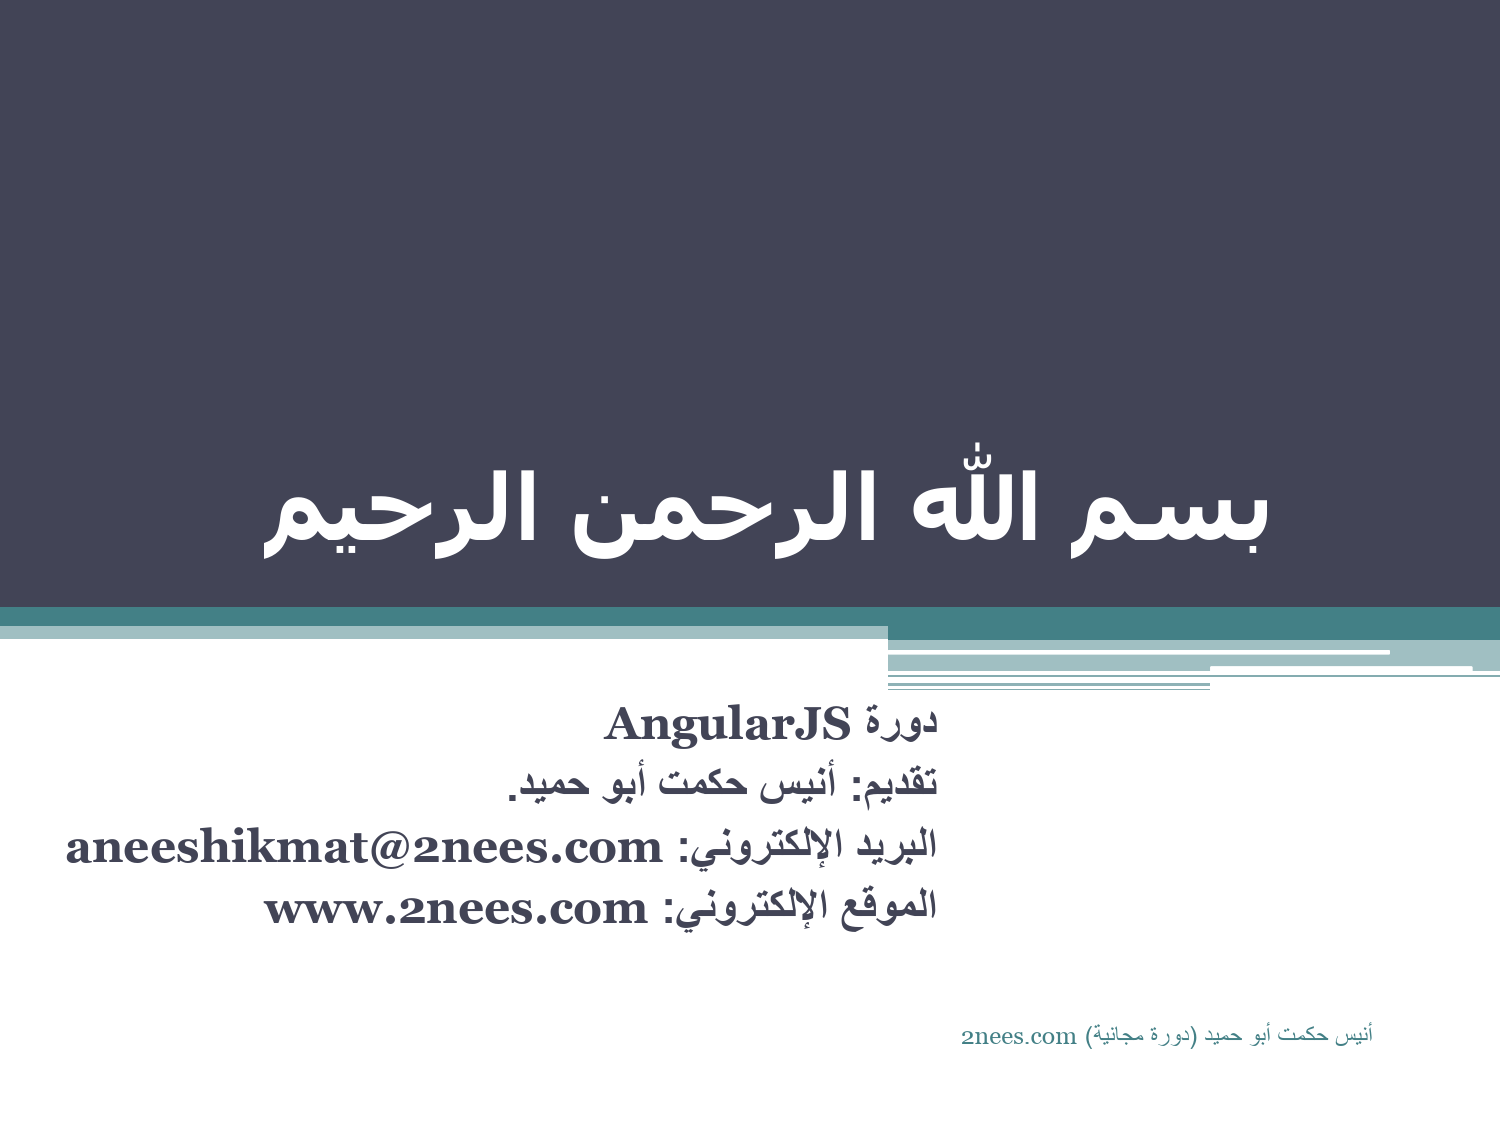 تنزيل وتحميل كتاِب AngularJS باللغة العربية pdf برابط مباشر مجاناً